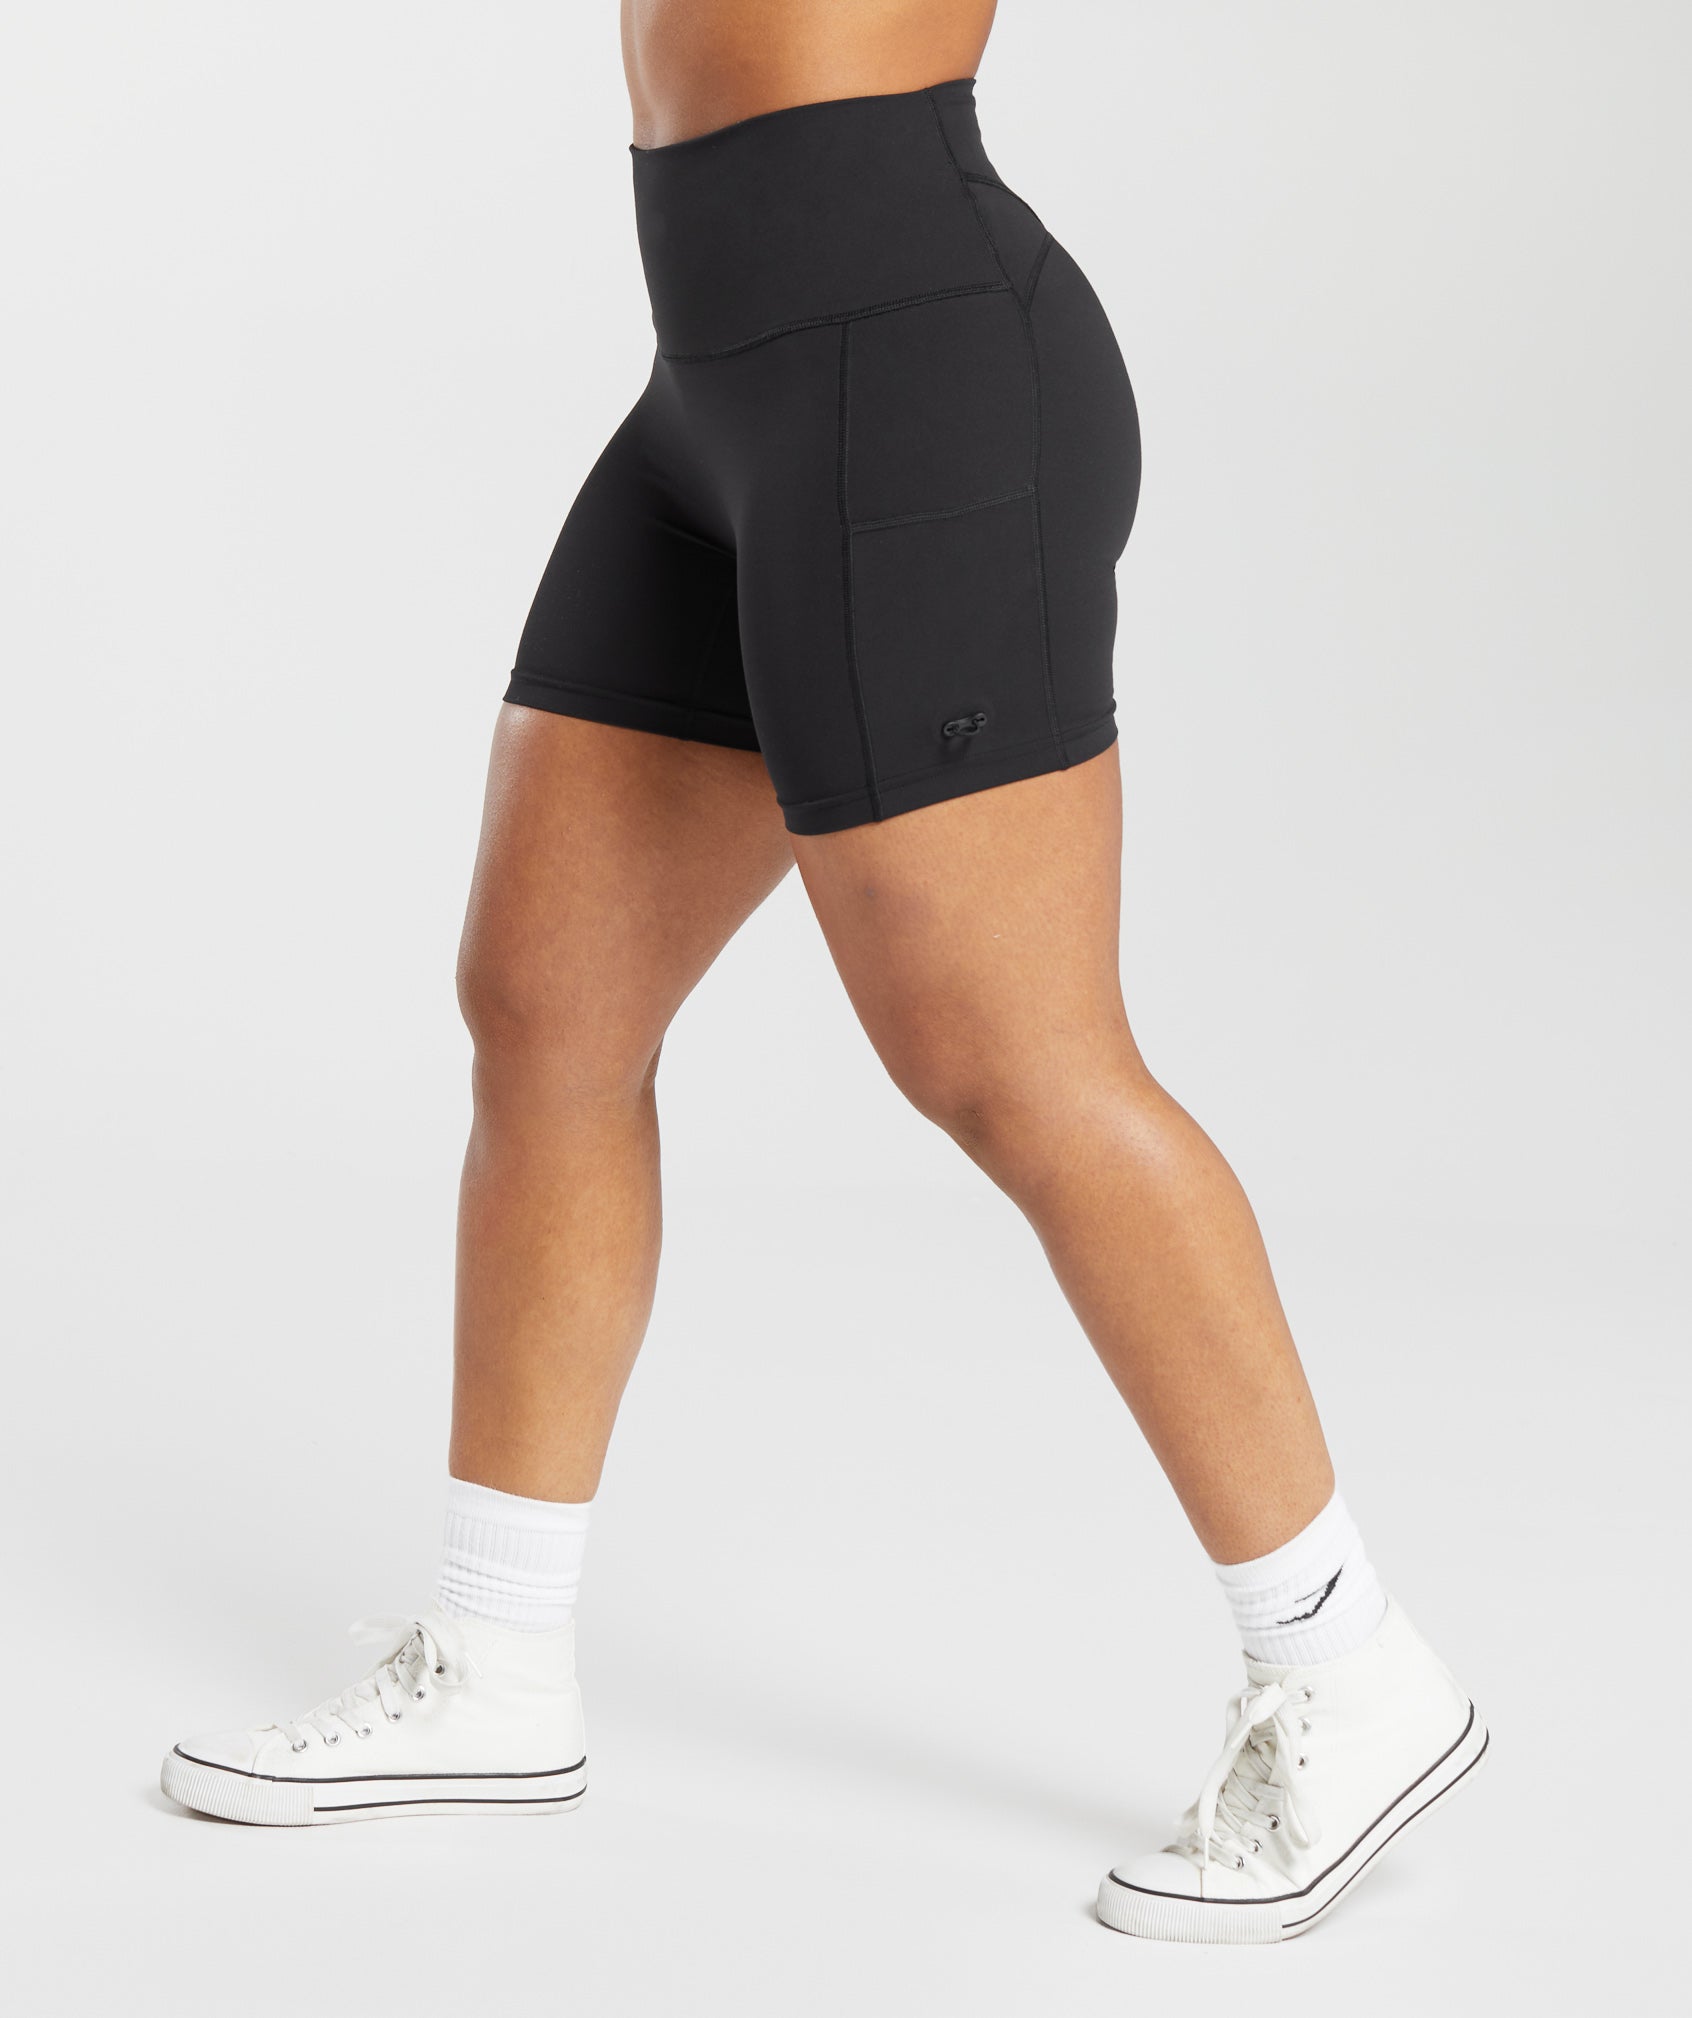 Women High Waist Seamless Workout Shorts – yogariv